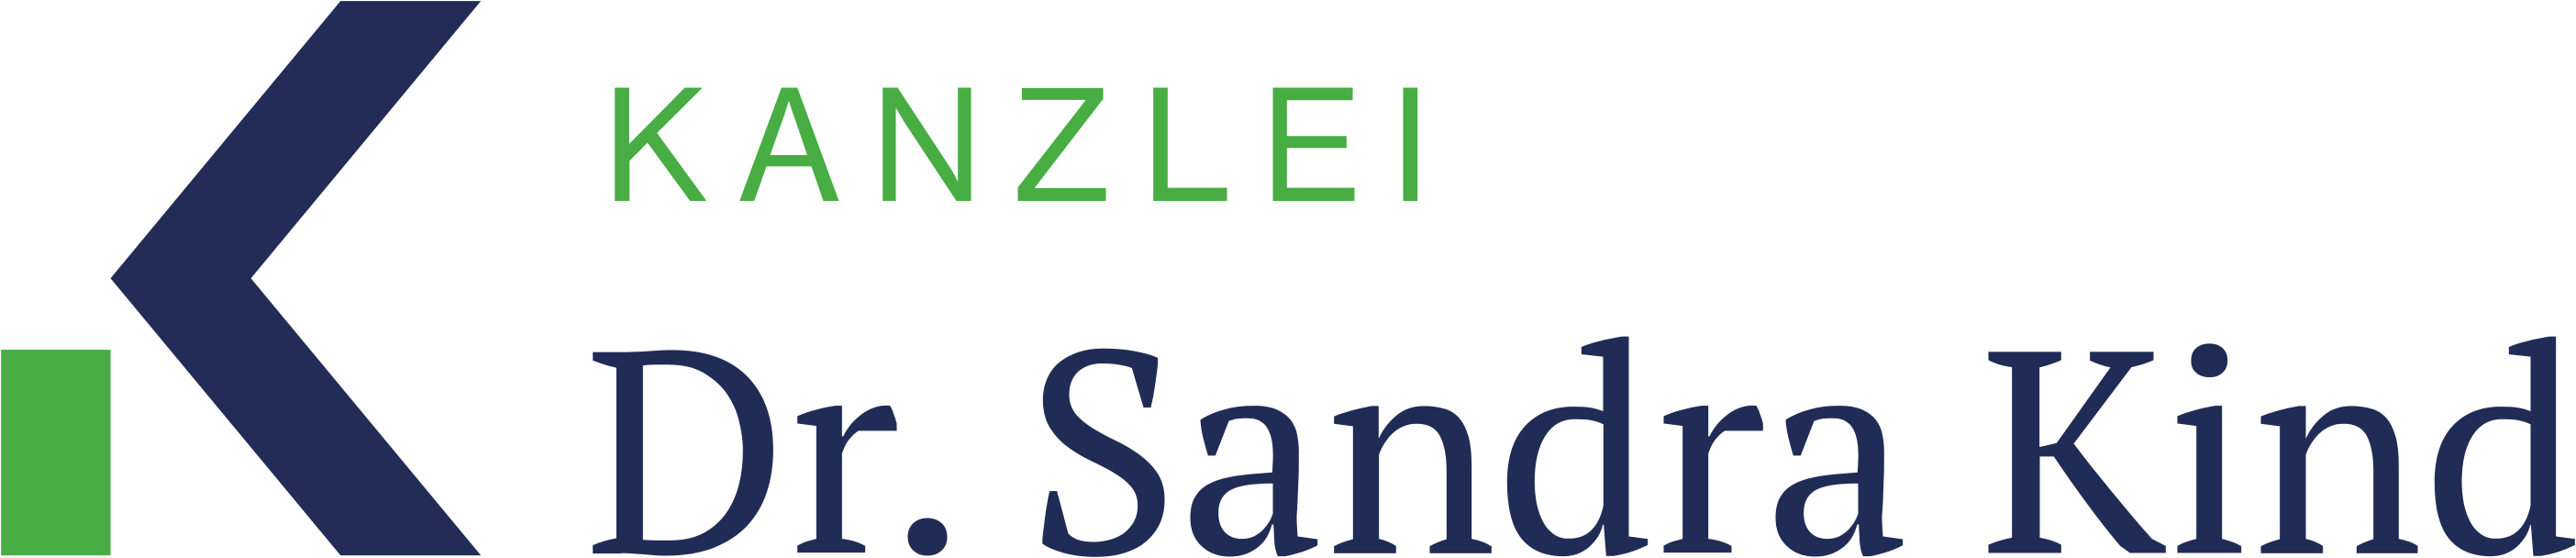 Logo Kanzlei Dr. Kind